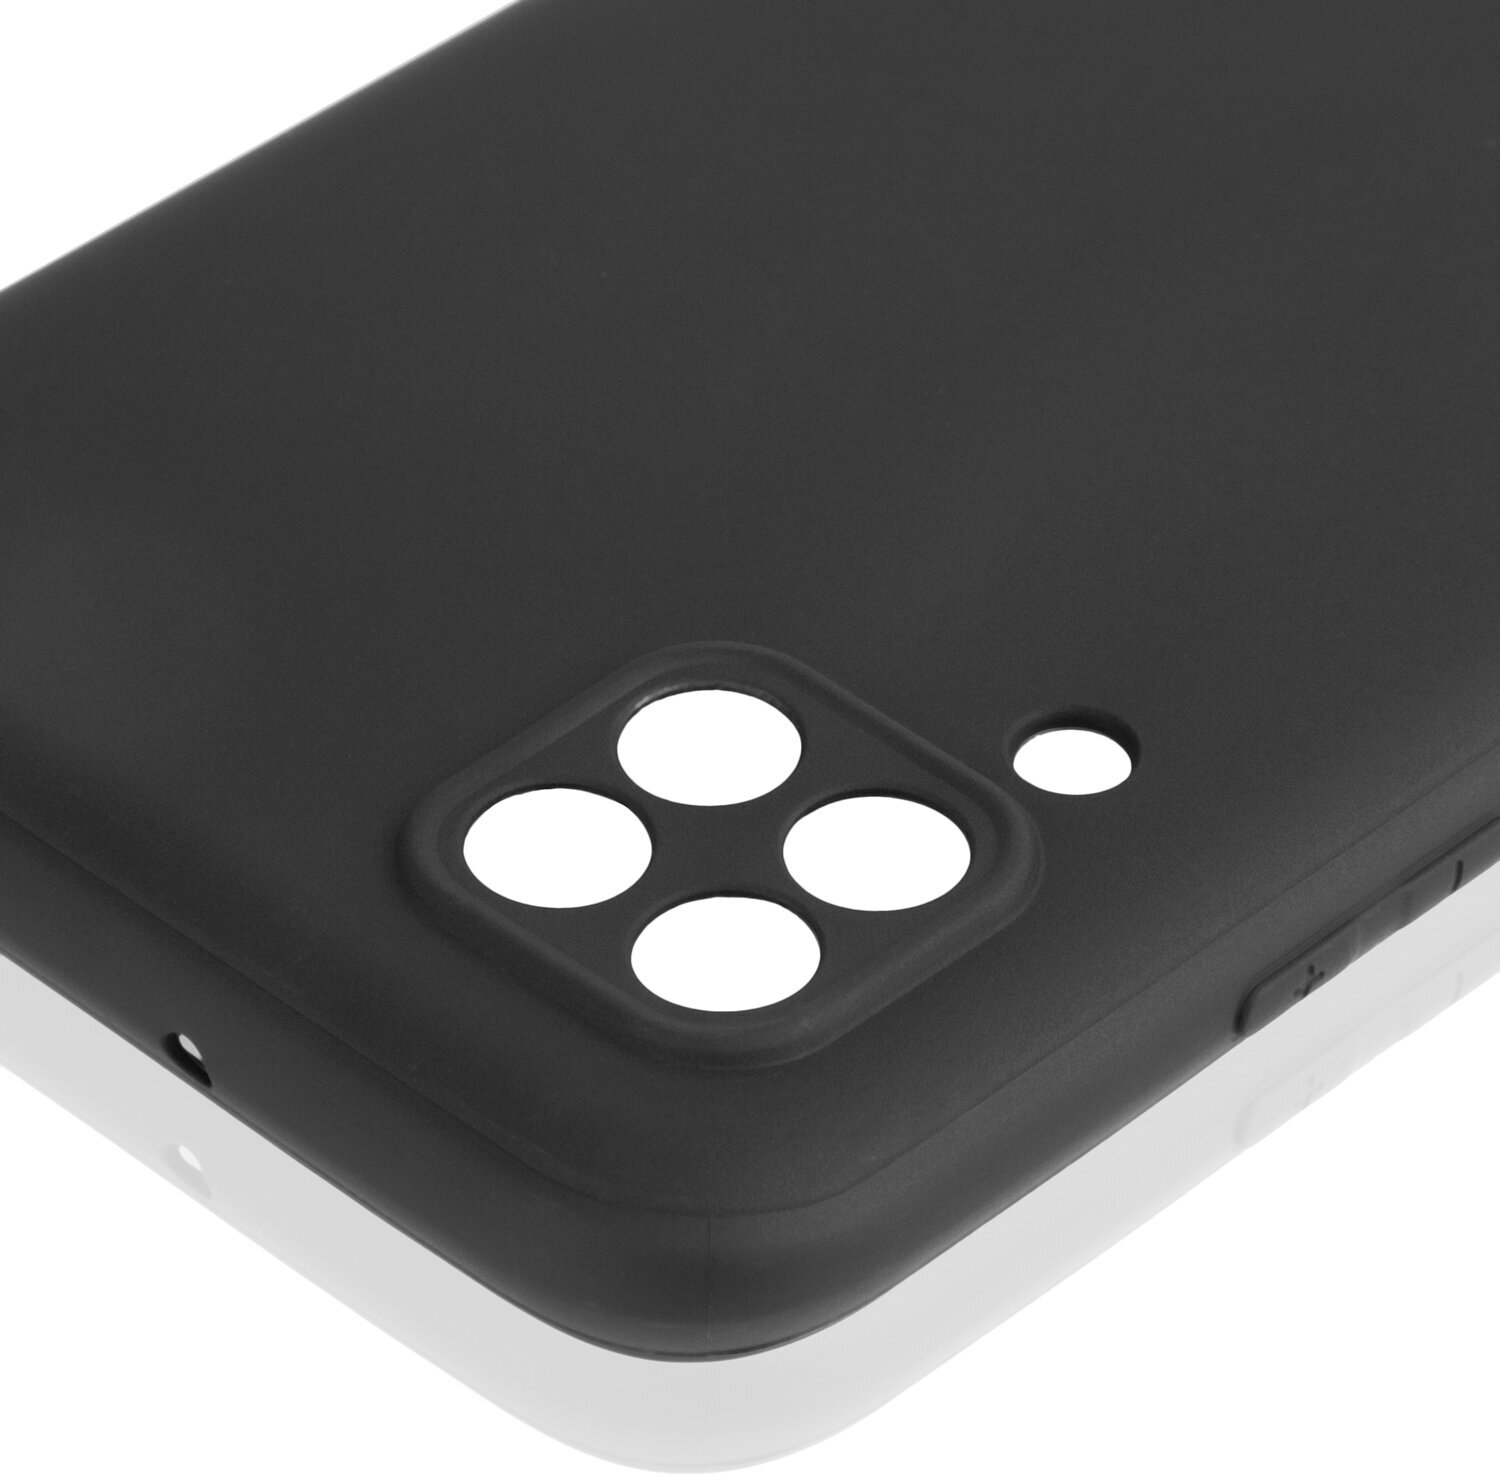 Чехол ROSCO для Huawei P40 lite (Хуавей П40 Лайт), матовый чехол, бортик (защита) вокруг блока камер, силиконовый, черный